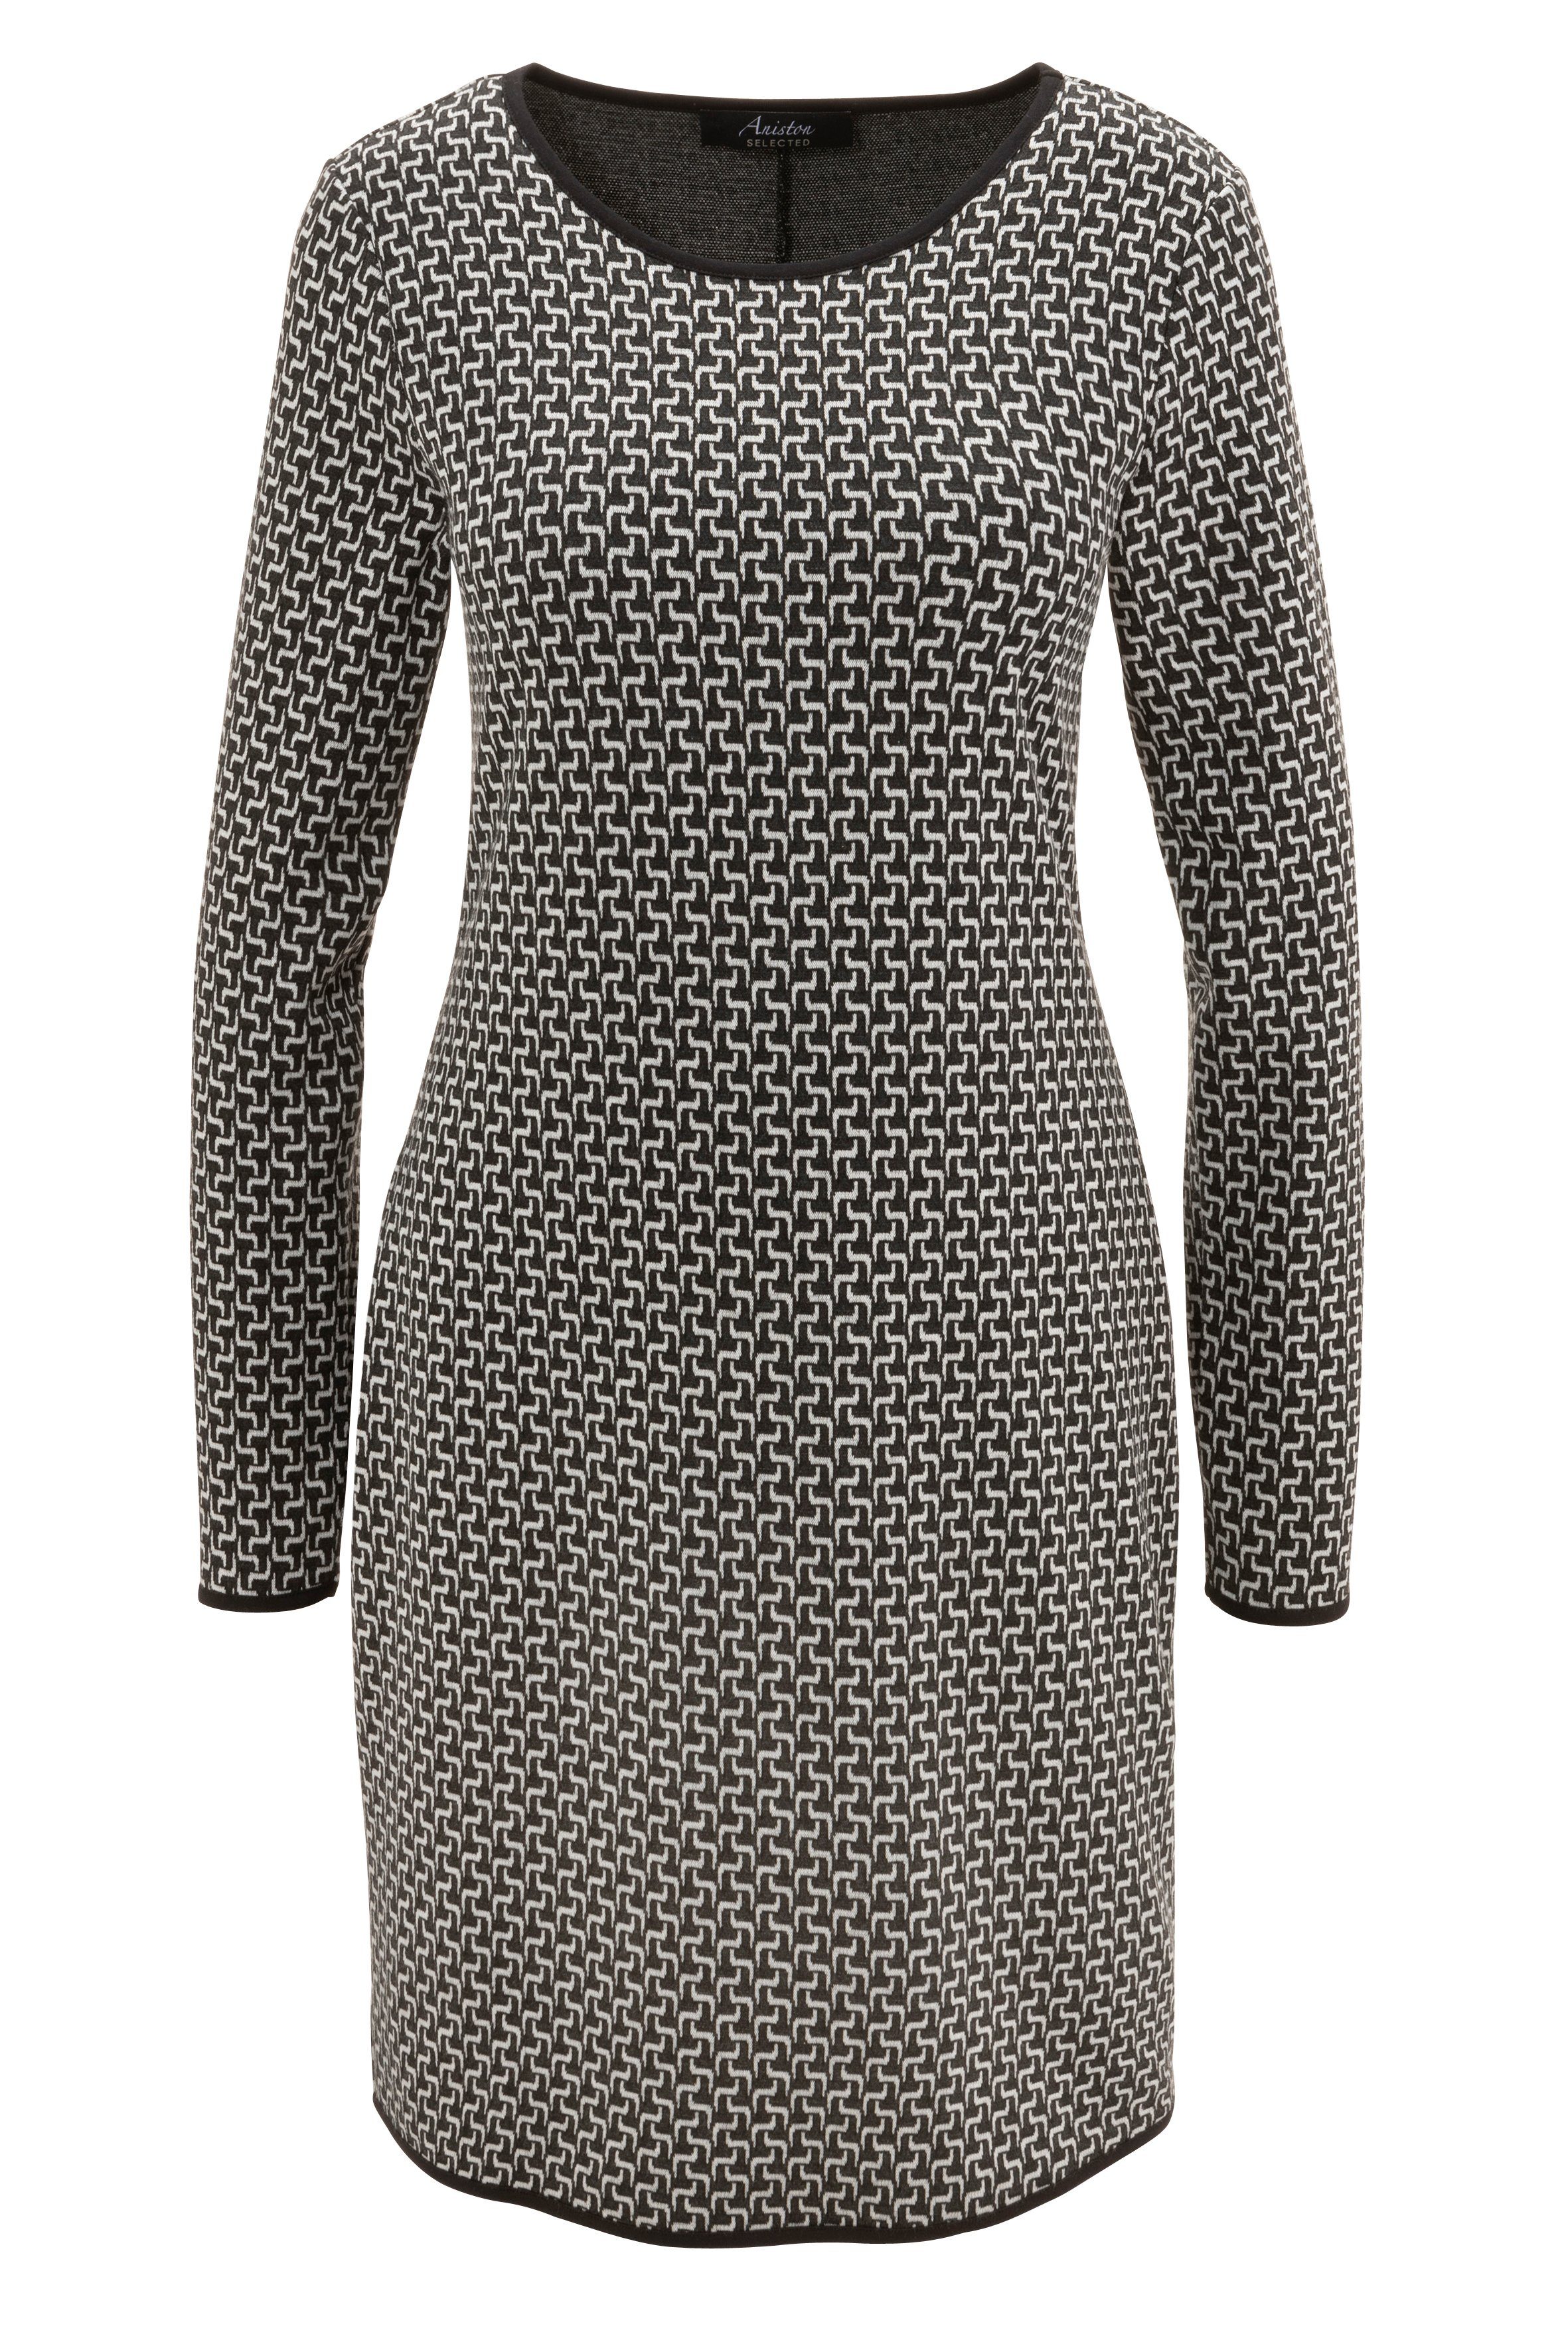 Jerseykleid schwarzen Allover-Muster und mit Abschlüssen SELECTED Aniston